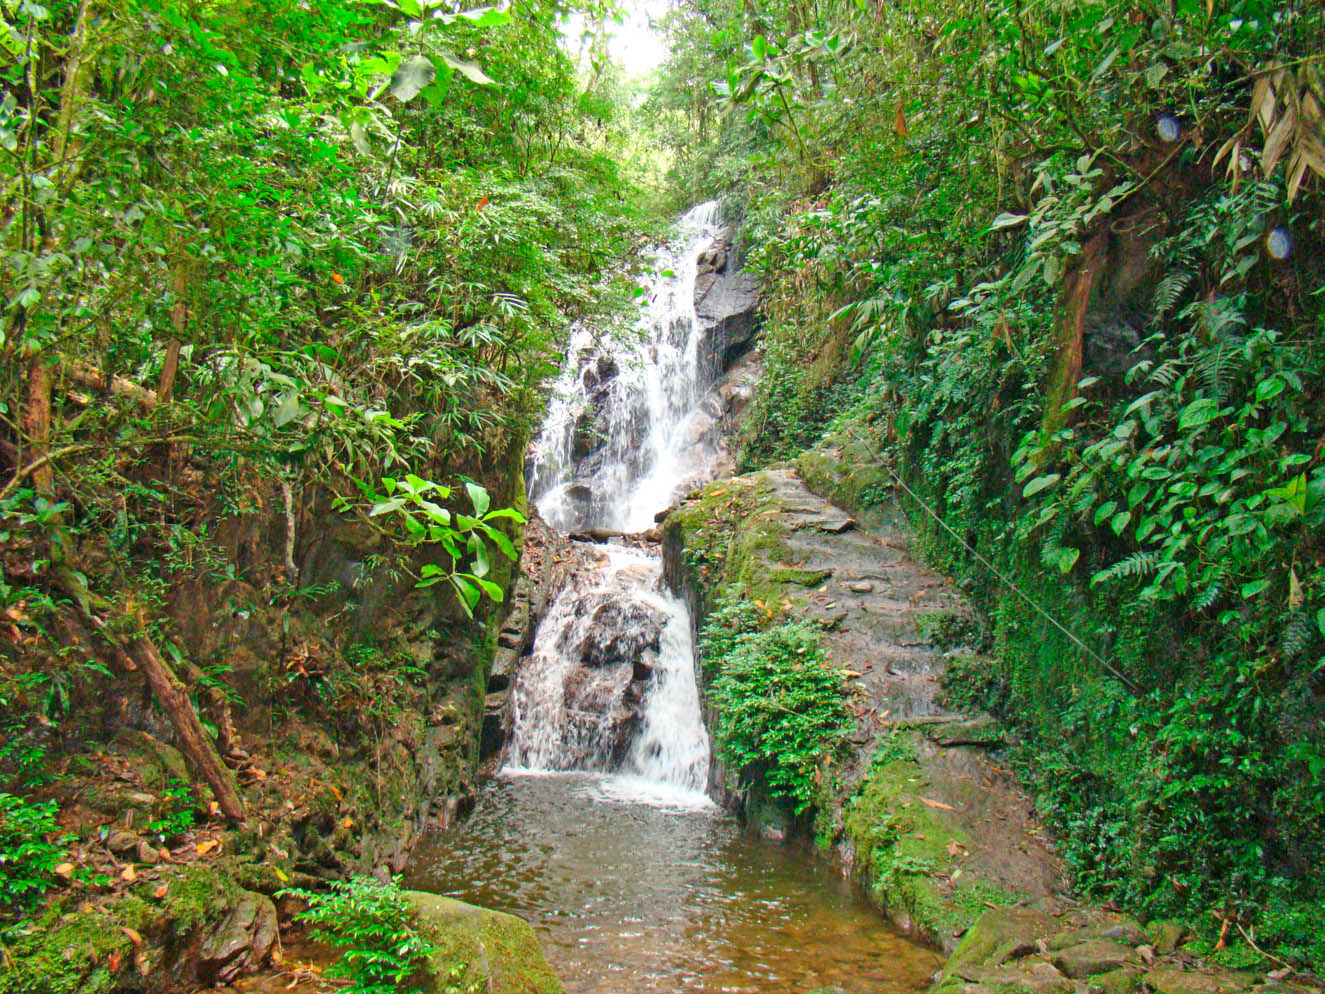 Turismo - Cachoeira do Santuário - Hotel Pousada Cruzeiro do Sul - Visconde de Mauá - RJ